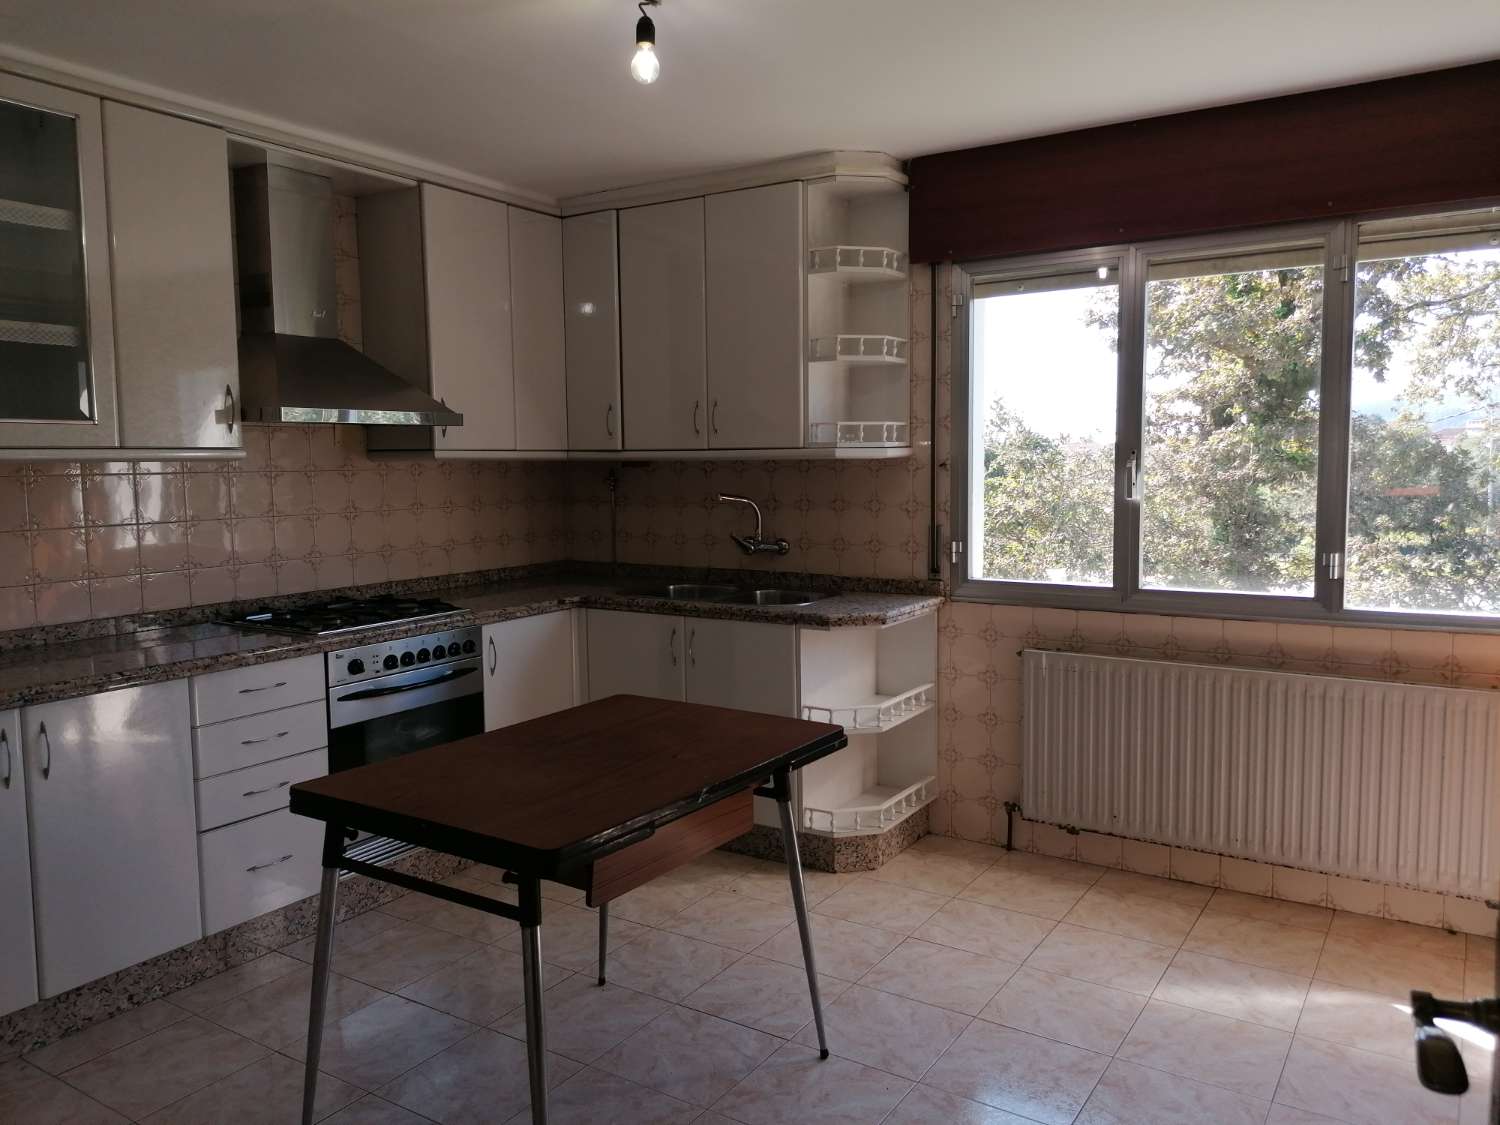 Pontevedra : A7134 : Maison avec finca à vendre à 4 kms de Pontevedra...